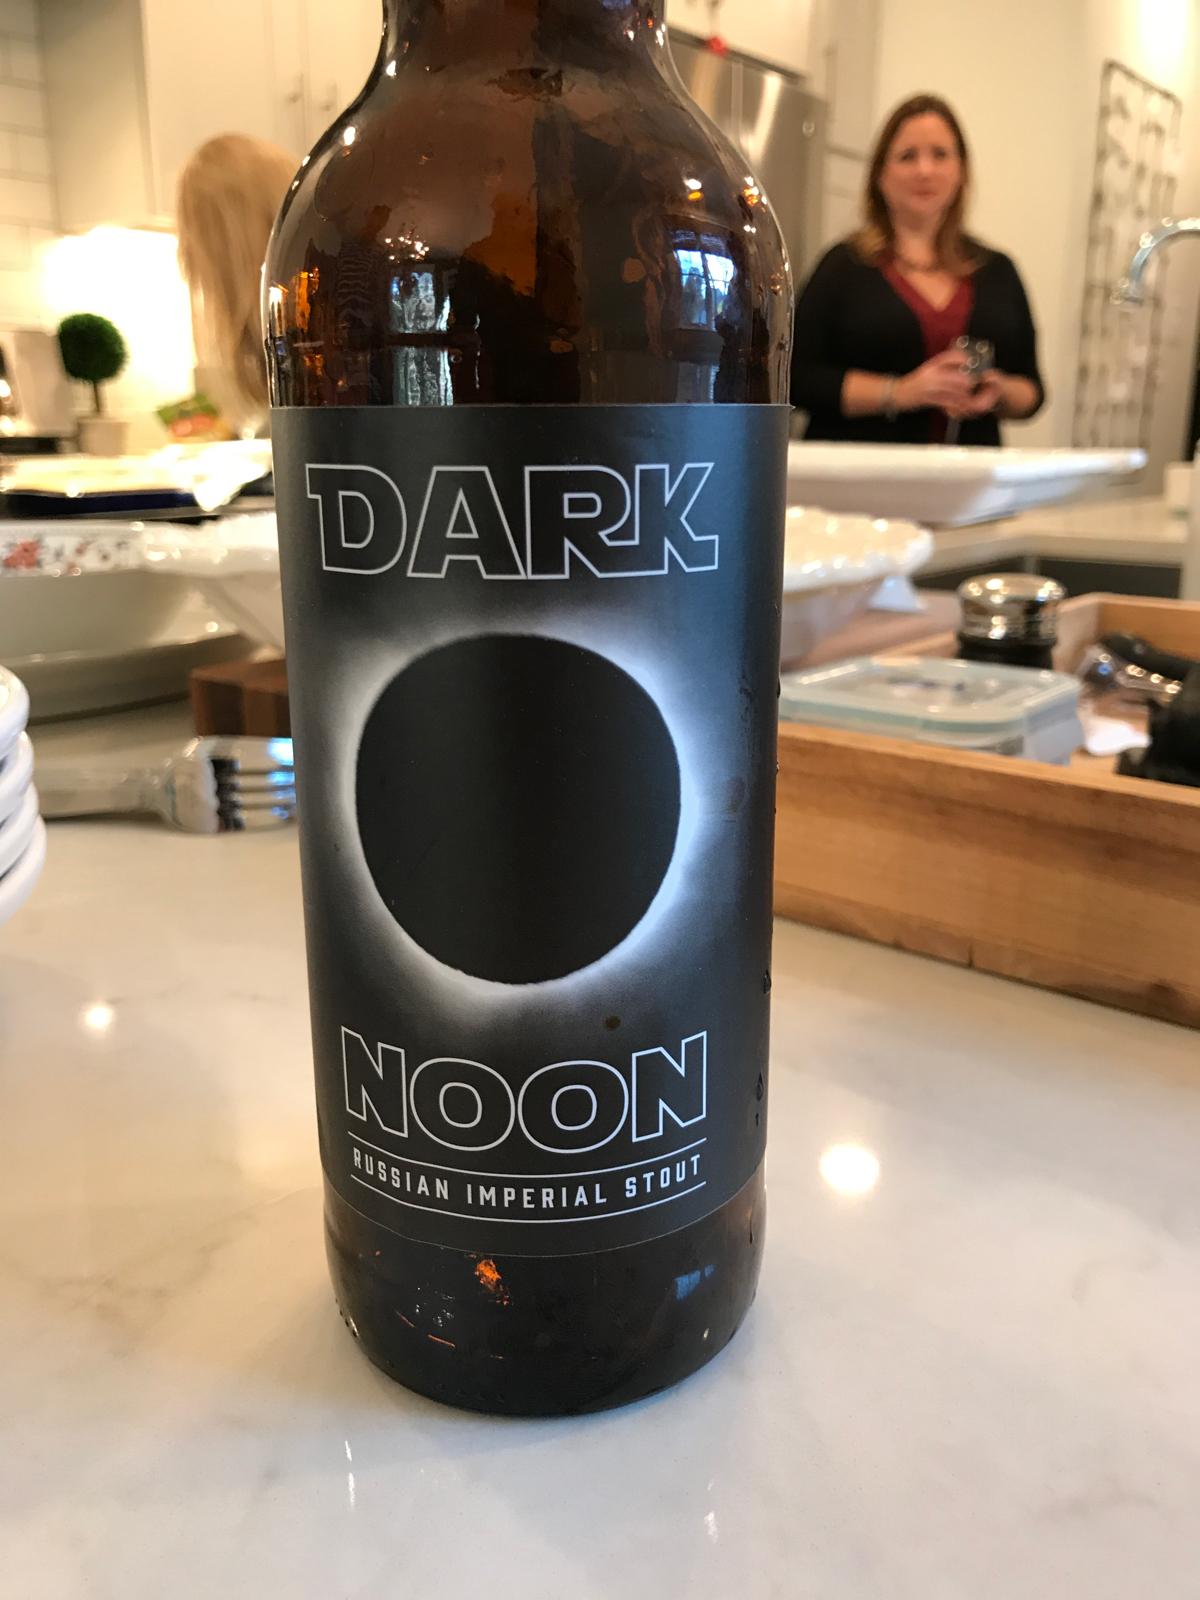 Dark Noon